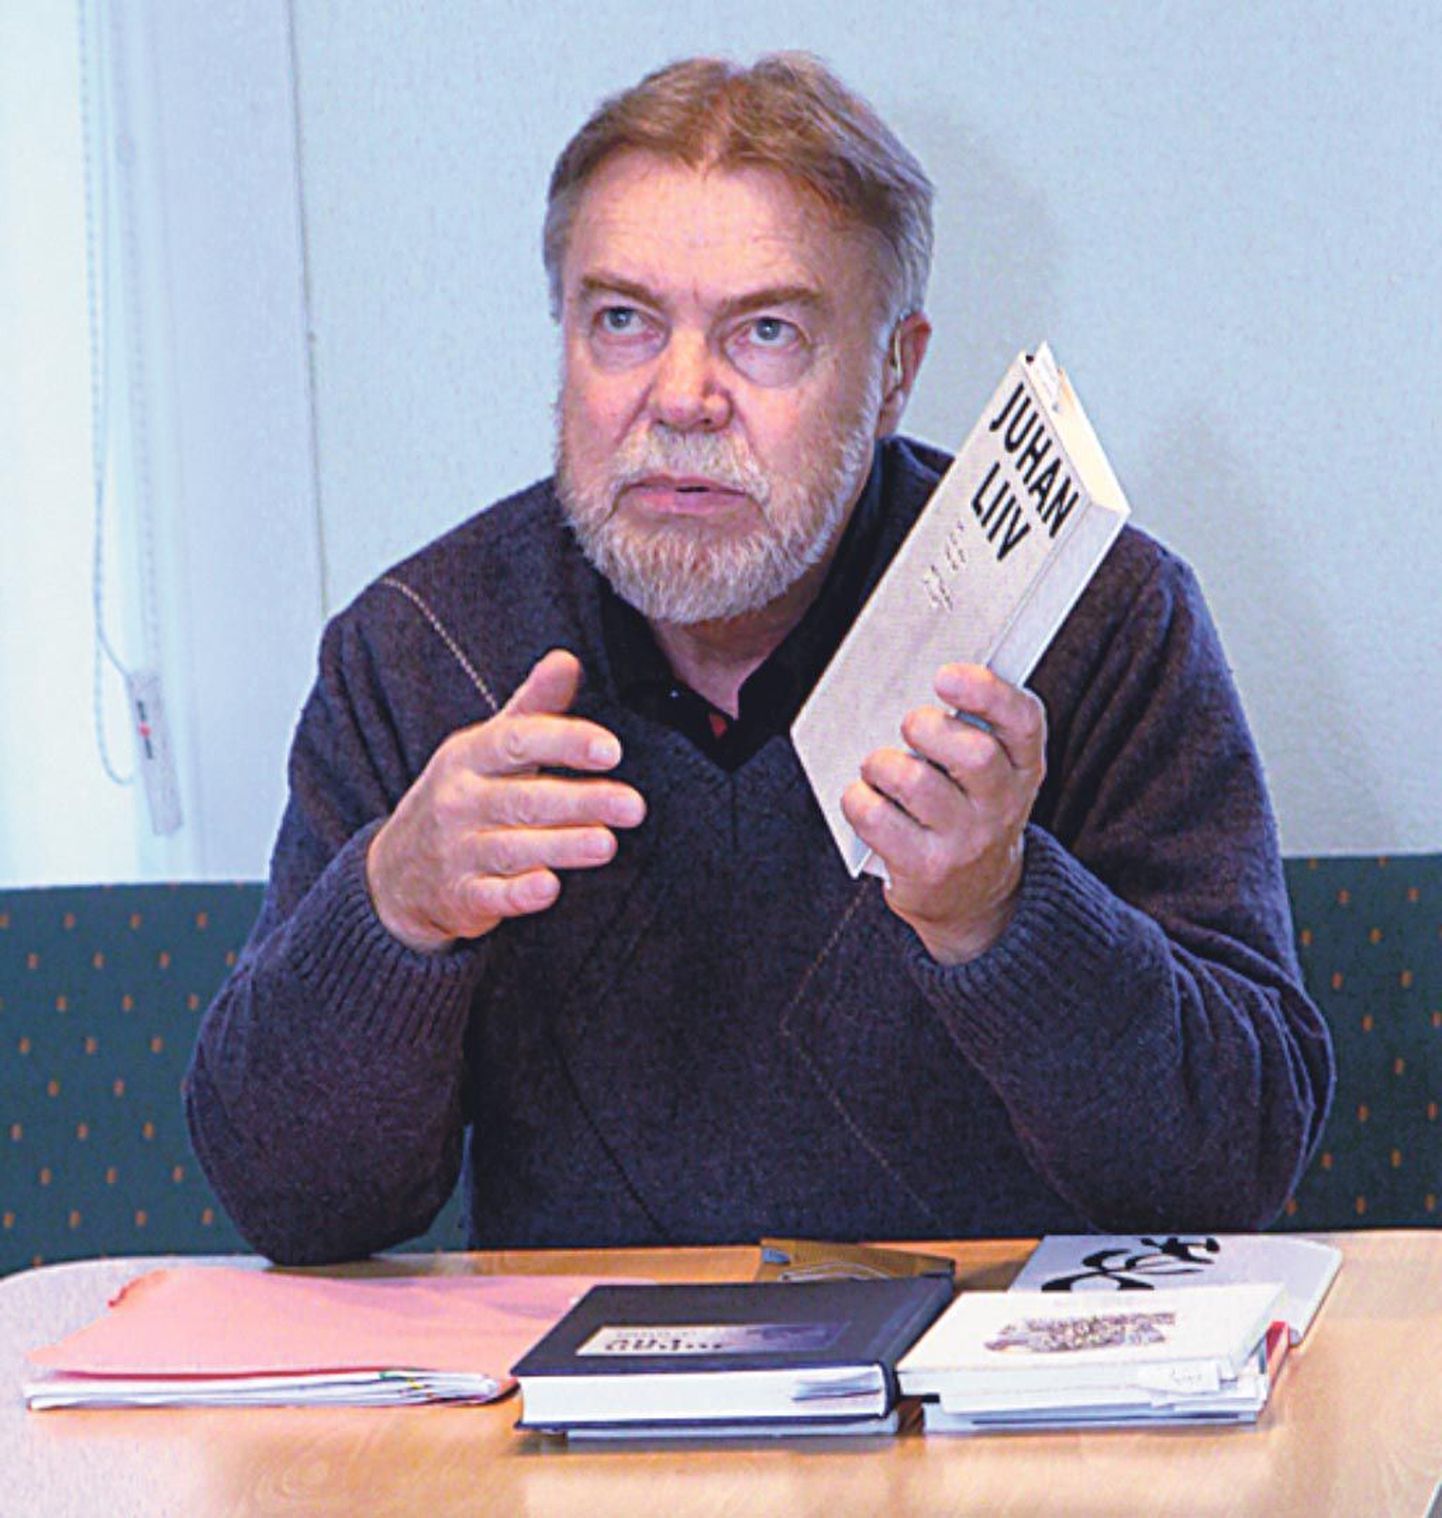 Allikukivi raamatukogus tutvustas kirjandusteadlane Jüri Talvet kuulajatele Juhan Liivi vähe tuntud luulet.